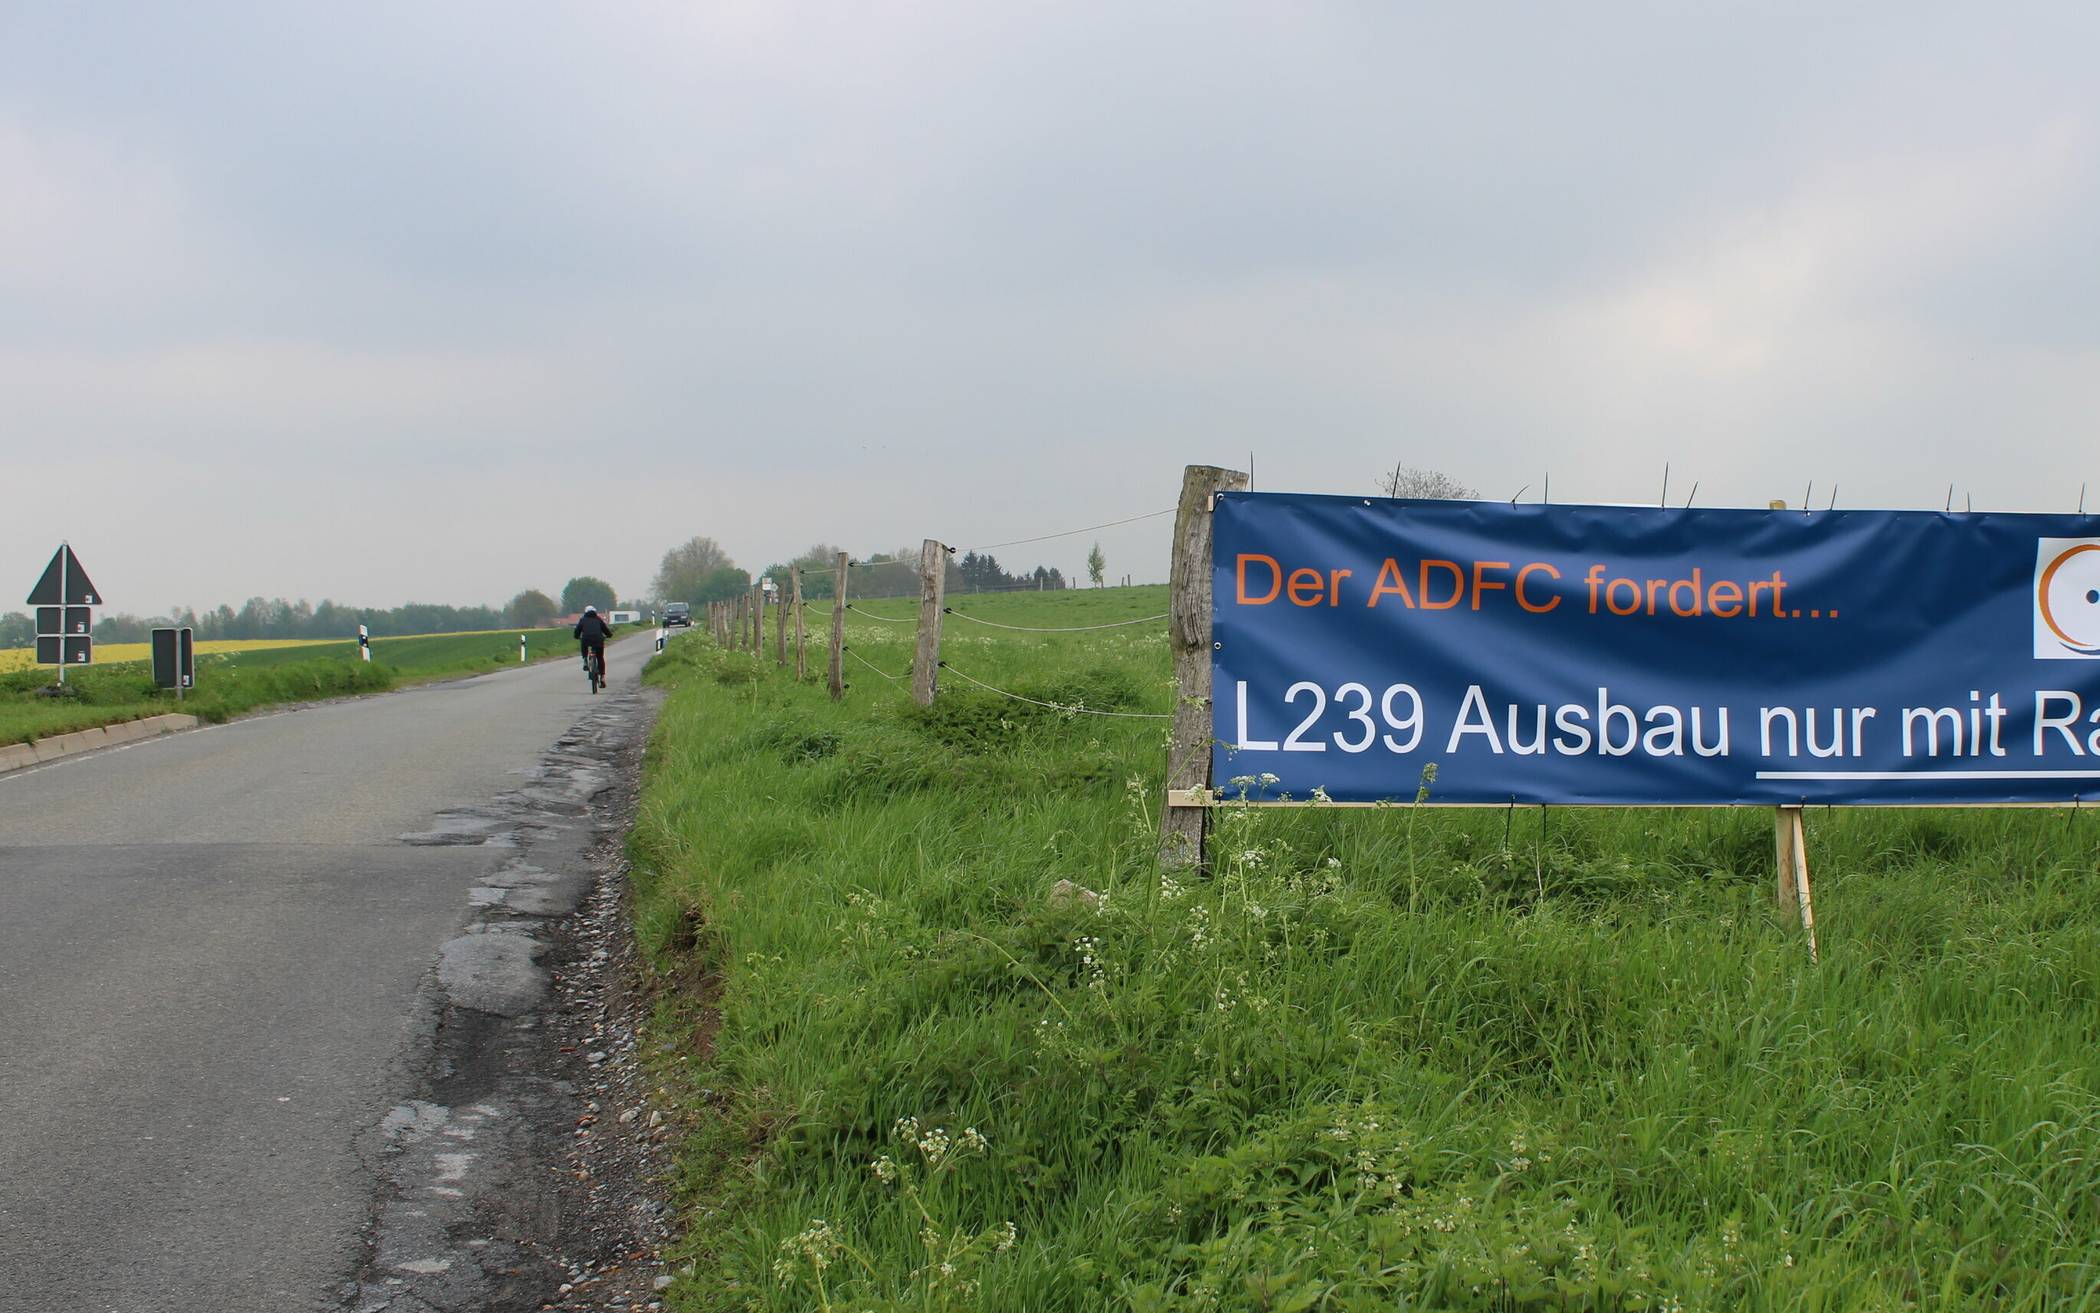  Auch der ADFC Mettmann setzt sich seit geraumer Zeit für den Bau eines Radweges an der L239 ein. 